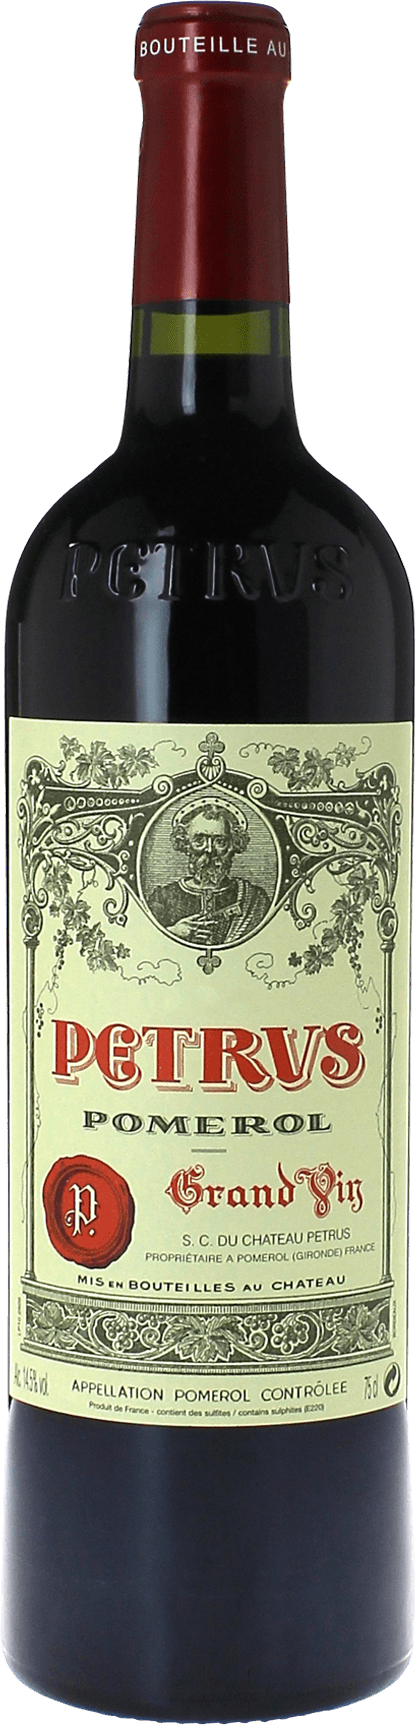 Petrus 1981  Pomerol, Bordeaux rouge